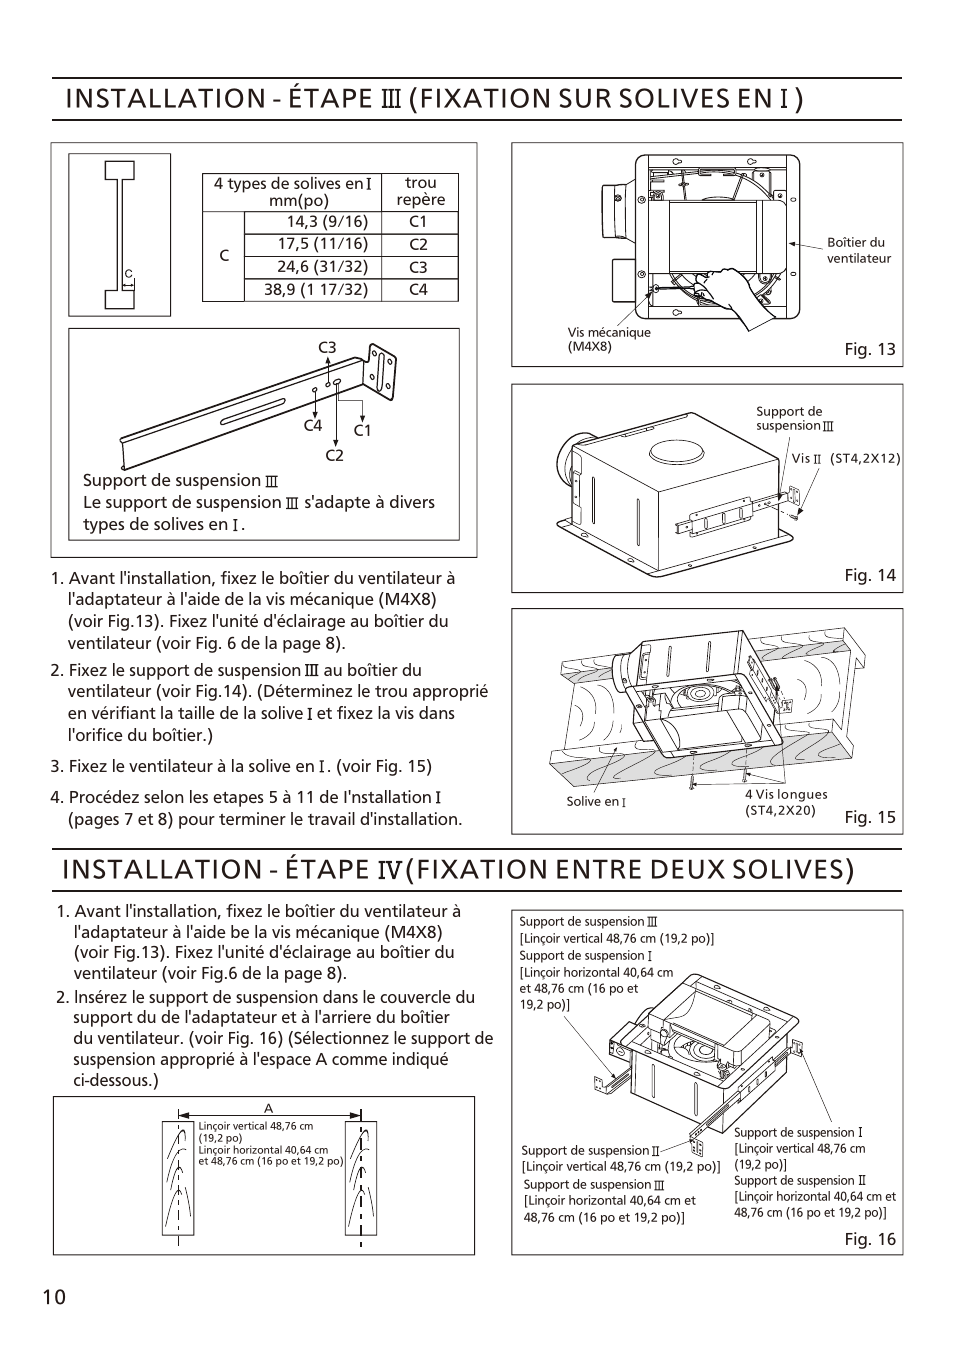 页 10, Installation - étape (fixation sur solives en ), Installation - étape (fixation entre deux solives) | Panasonic FV-08VFL3 Manuel d'utilisation | Page 10 / 16